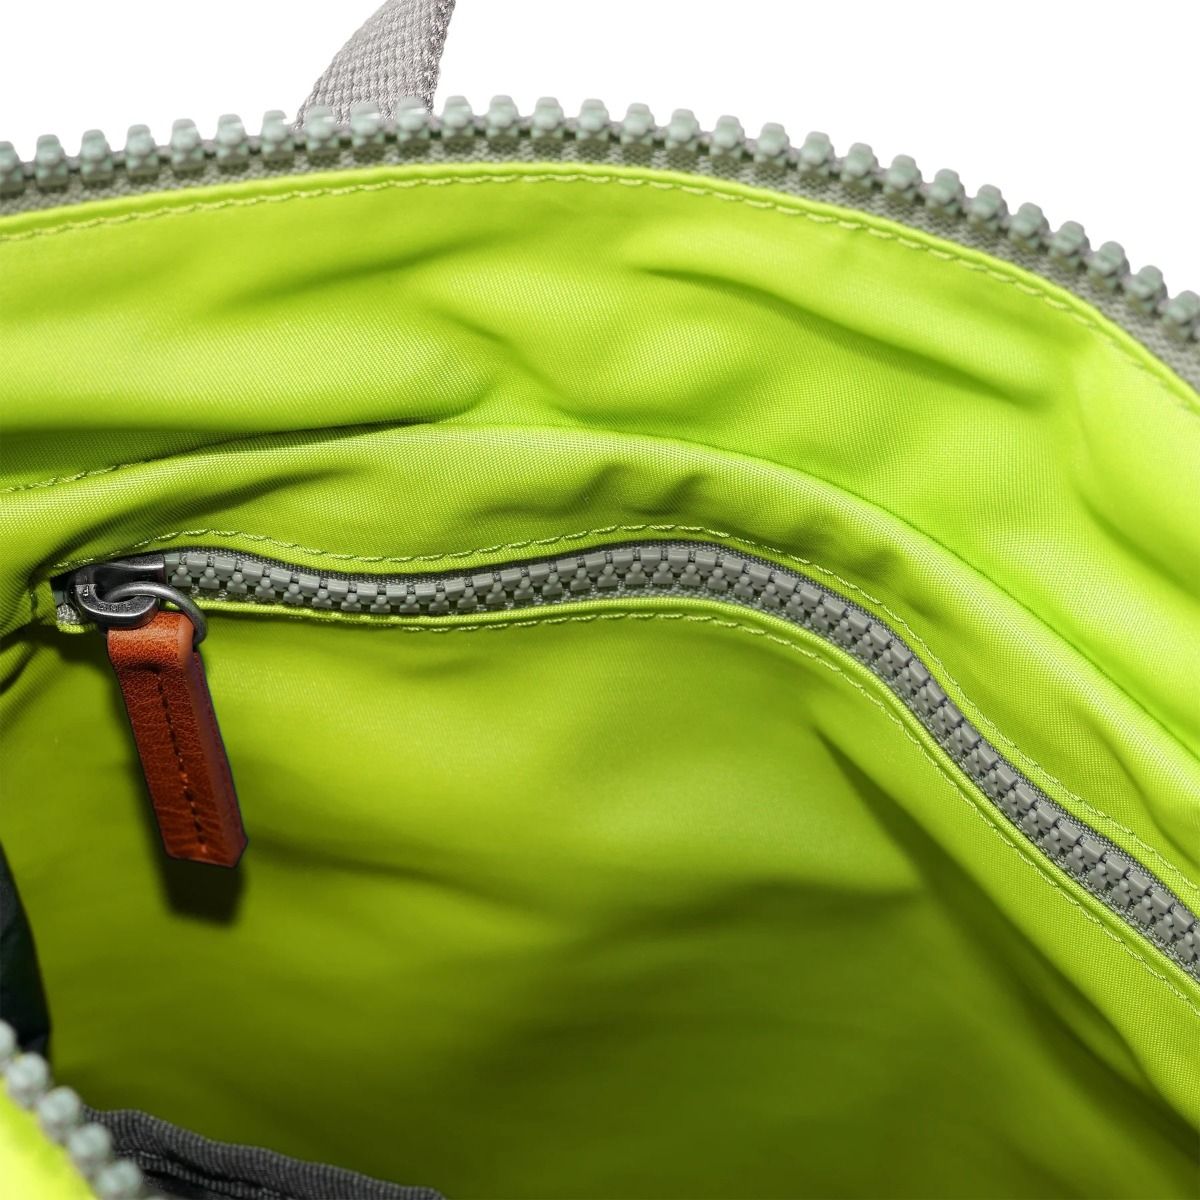 Roka Bantry B Small Bag in Lime inside pocket